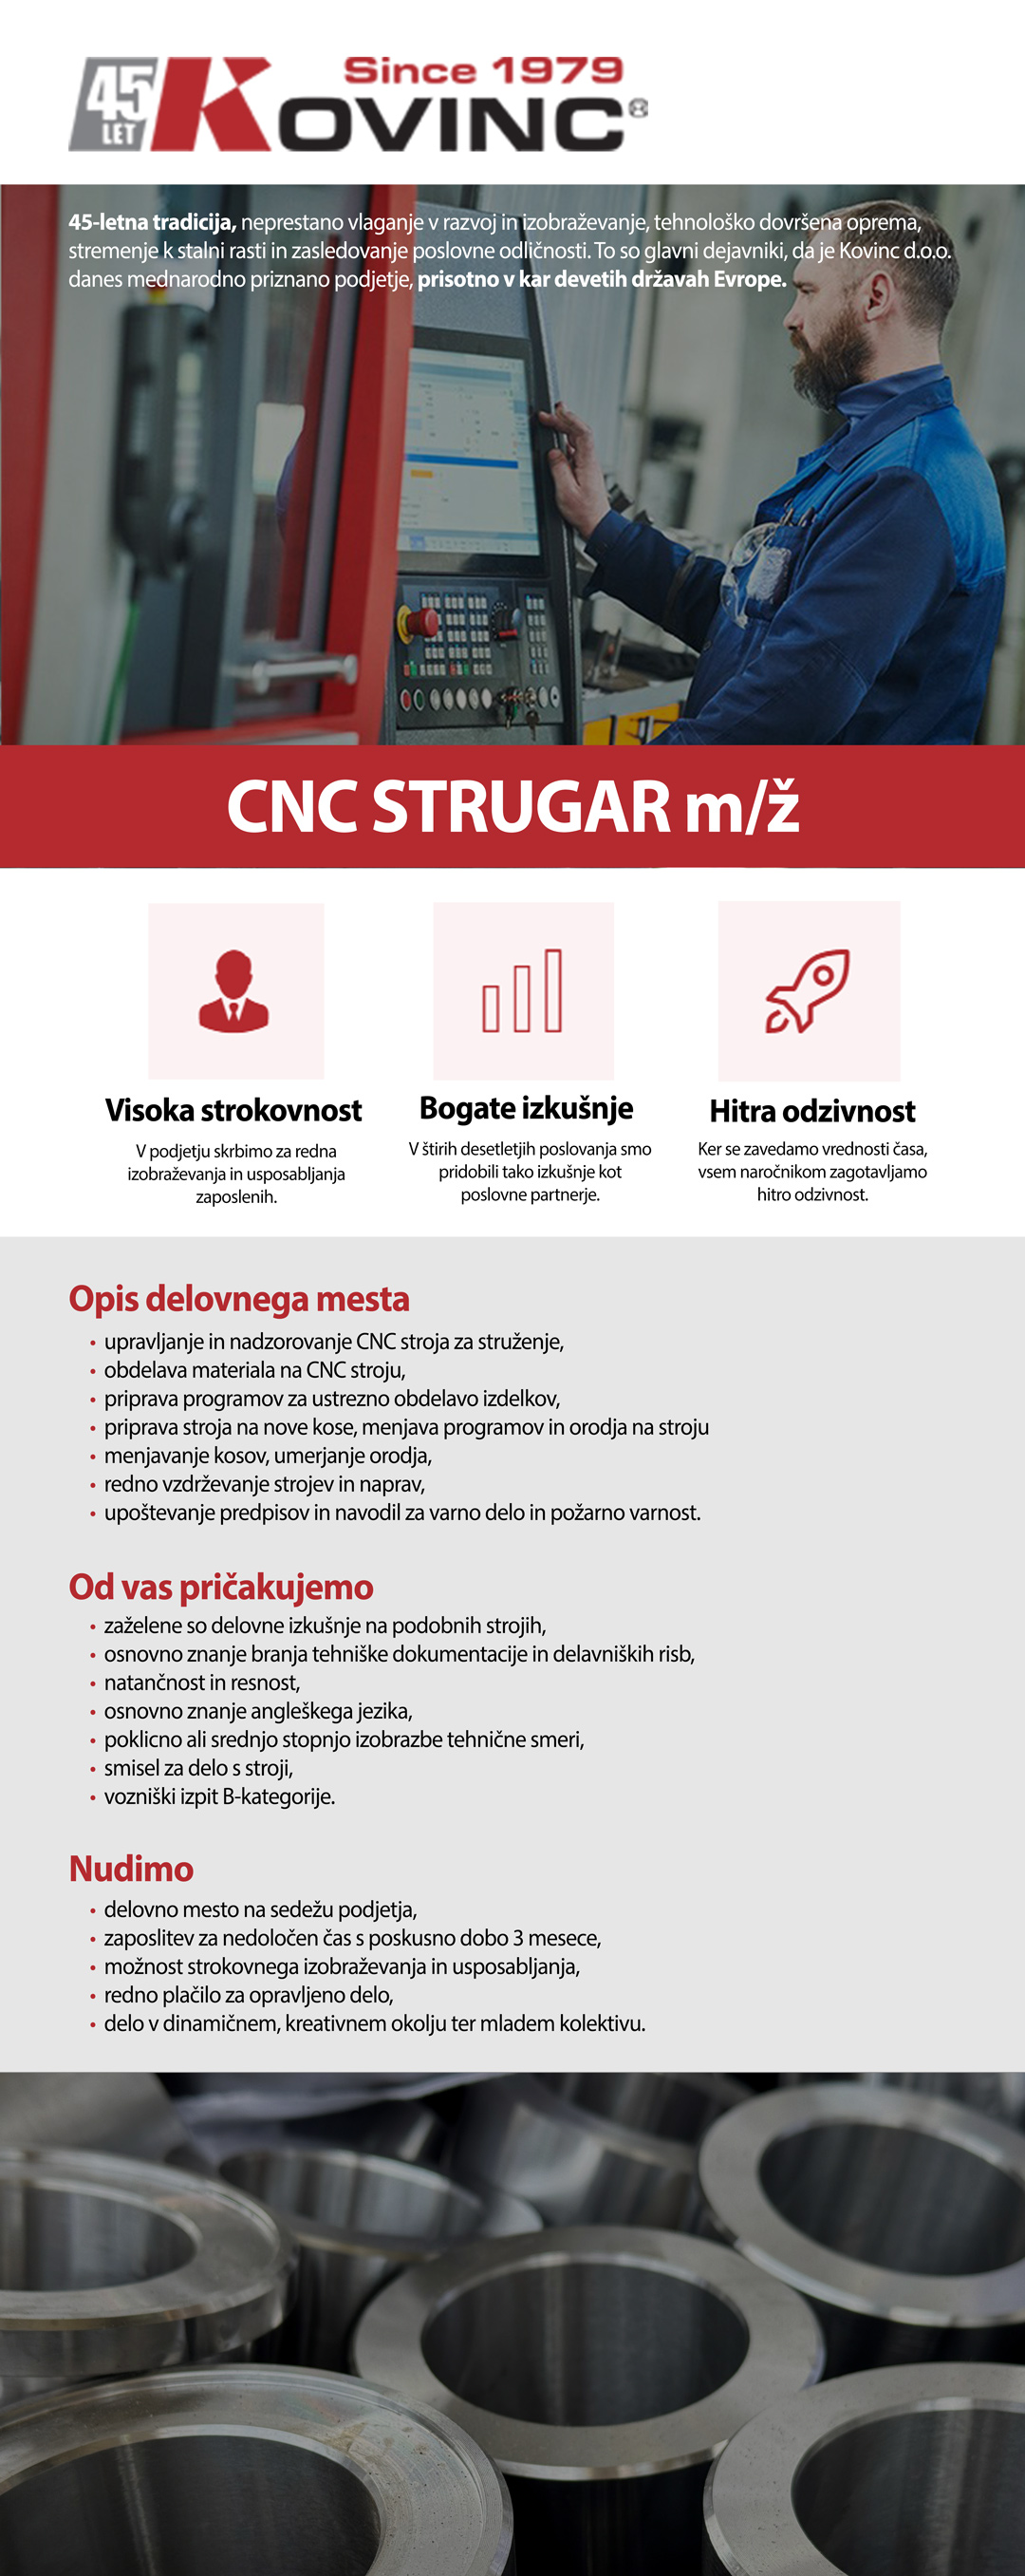 CNC Strugar m/ž